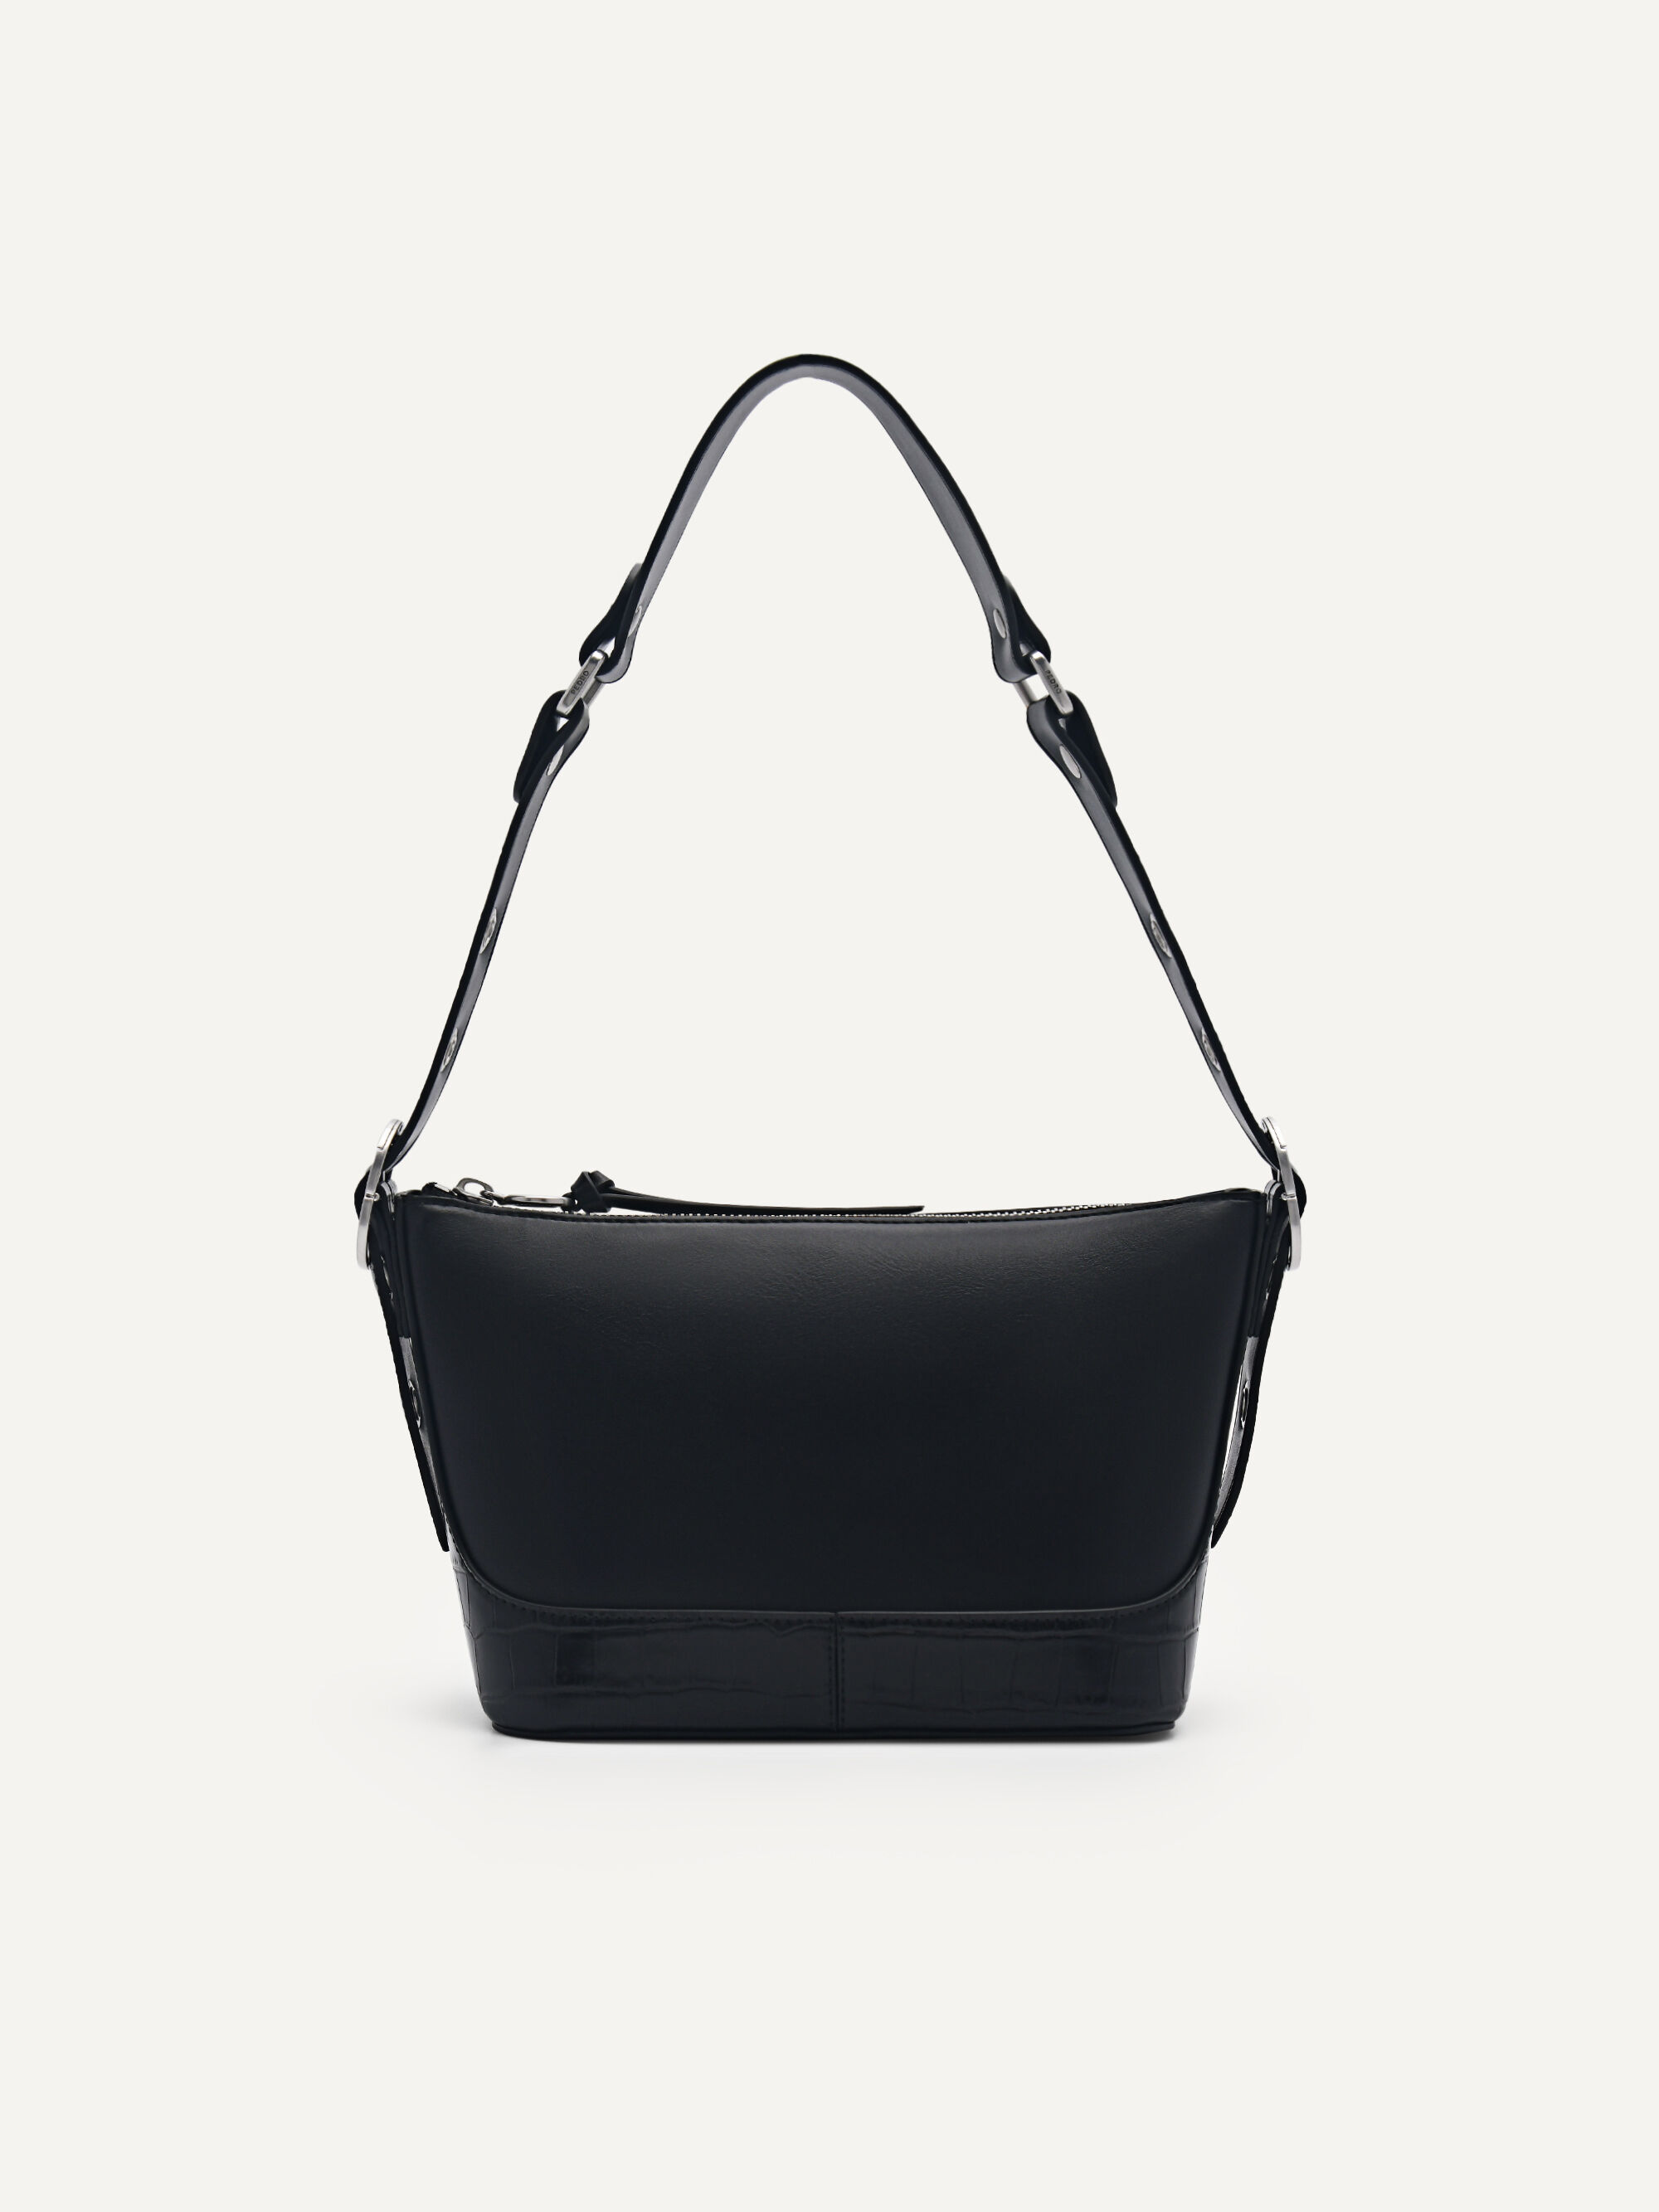 Norah Shoulder Bag, Black